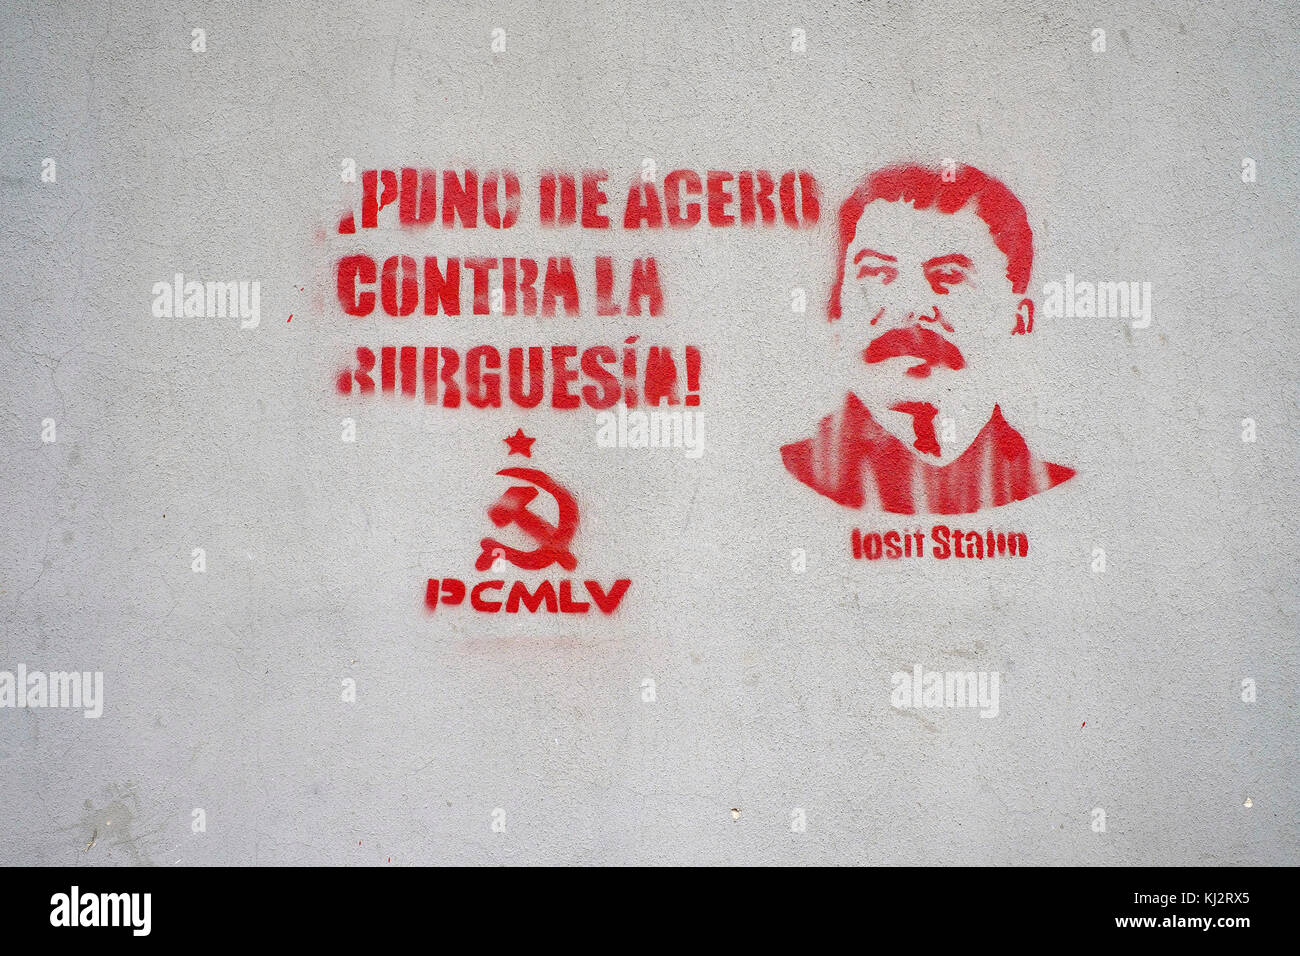 Venezuela, Santiago de Le-n de Caracas: pittura murale nella città raffigurante Stalin con lo slogan "Puno de acero contra la burguesia', un pugno di acciaio Foto Stock